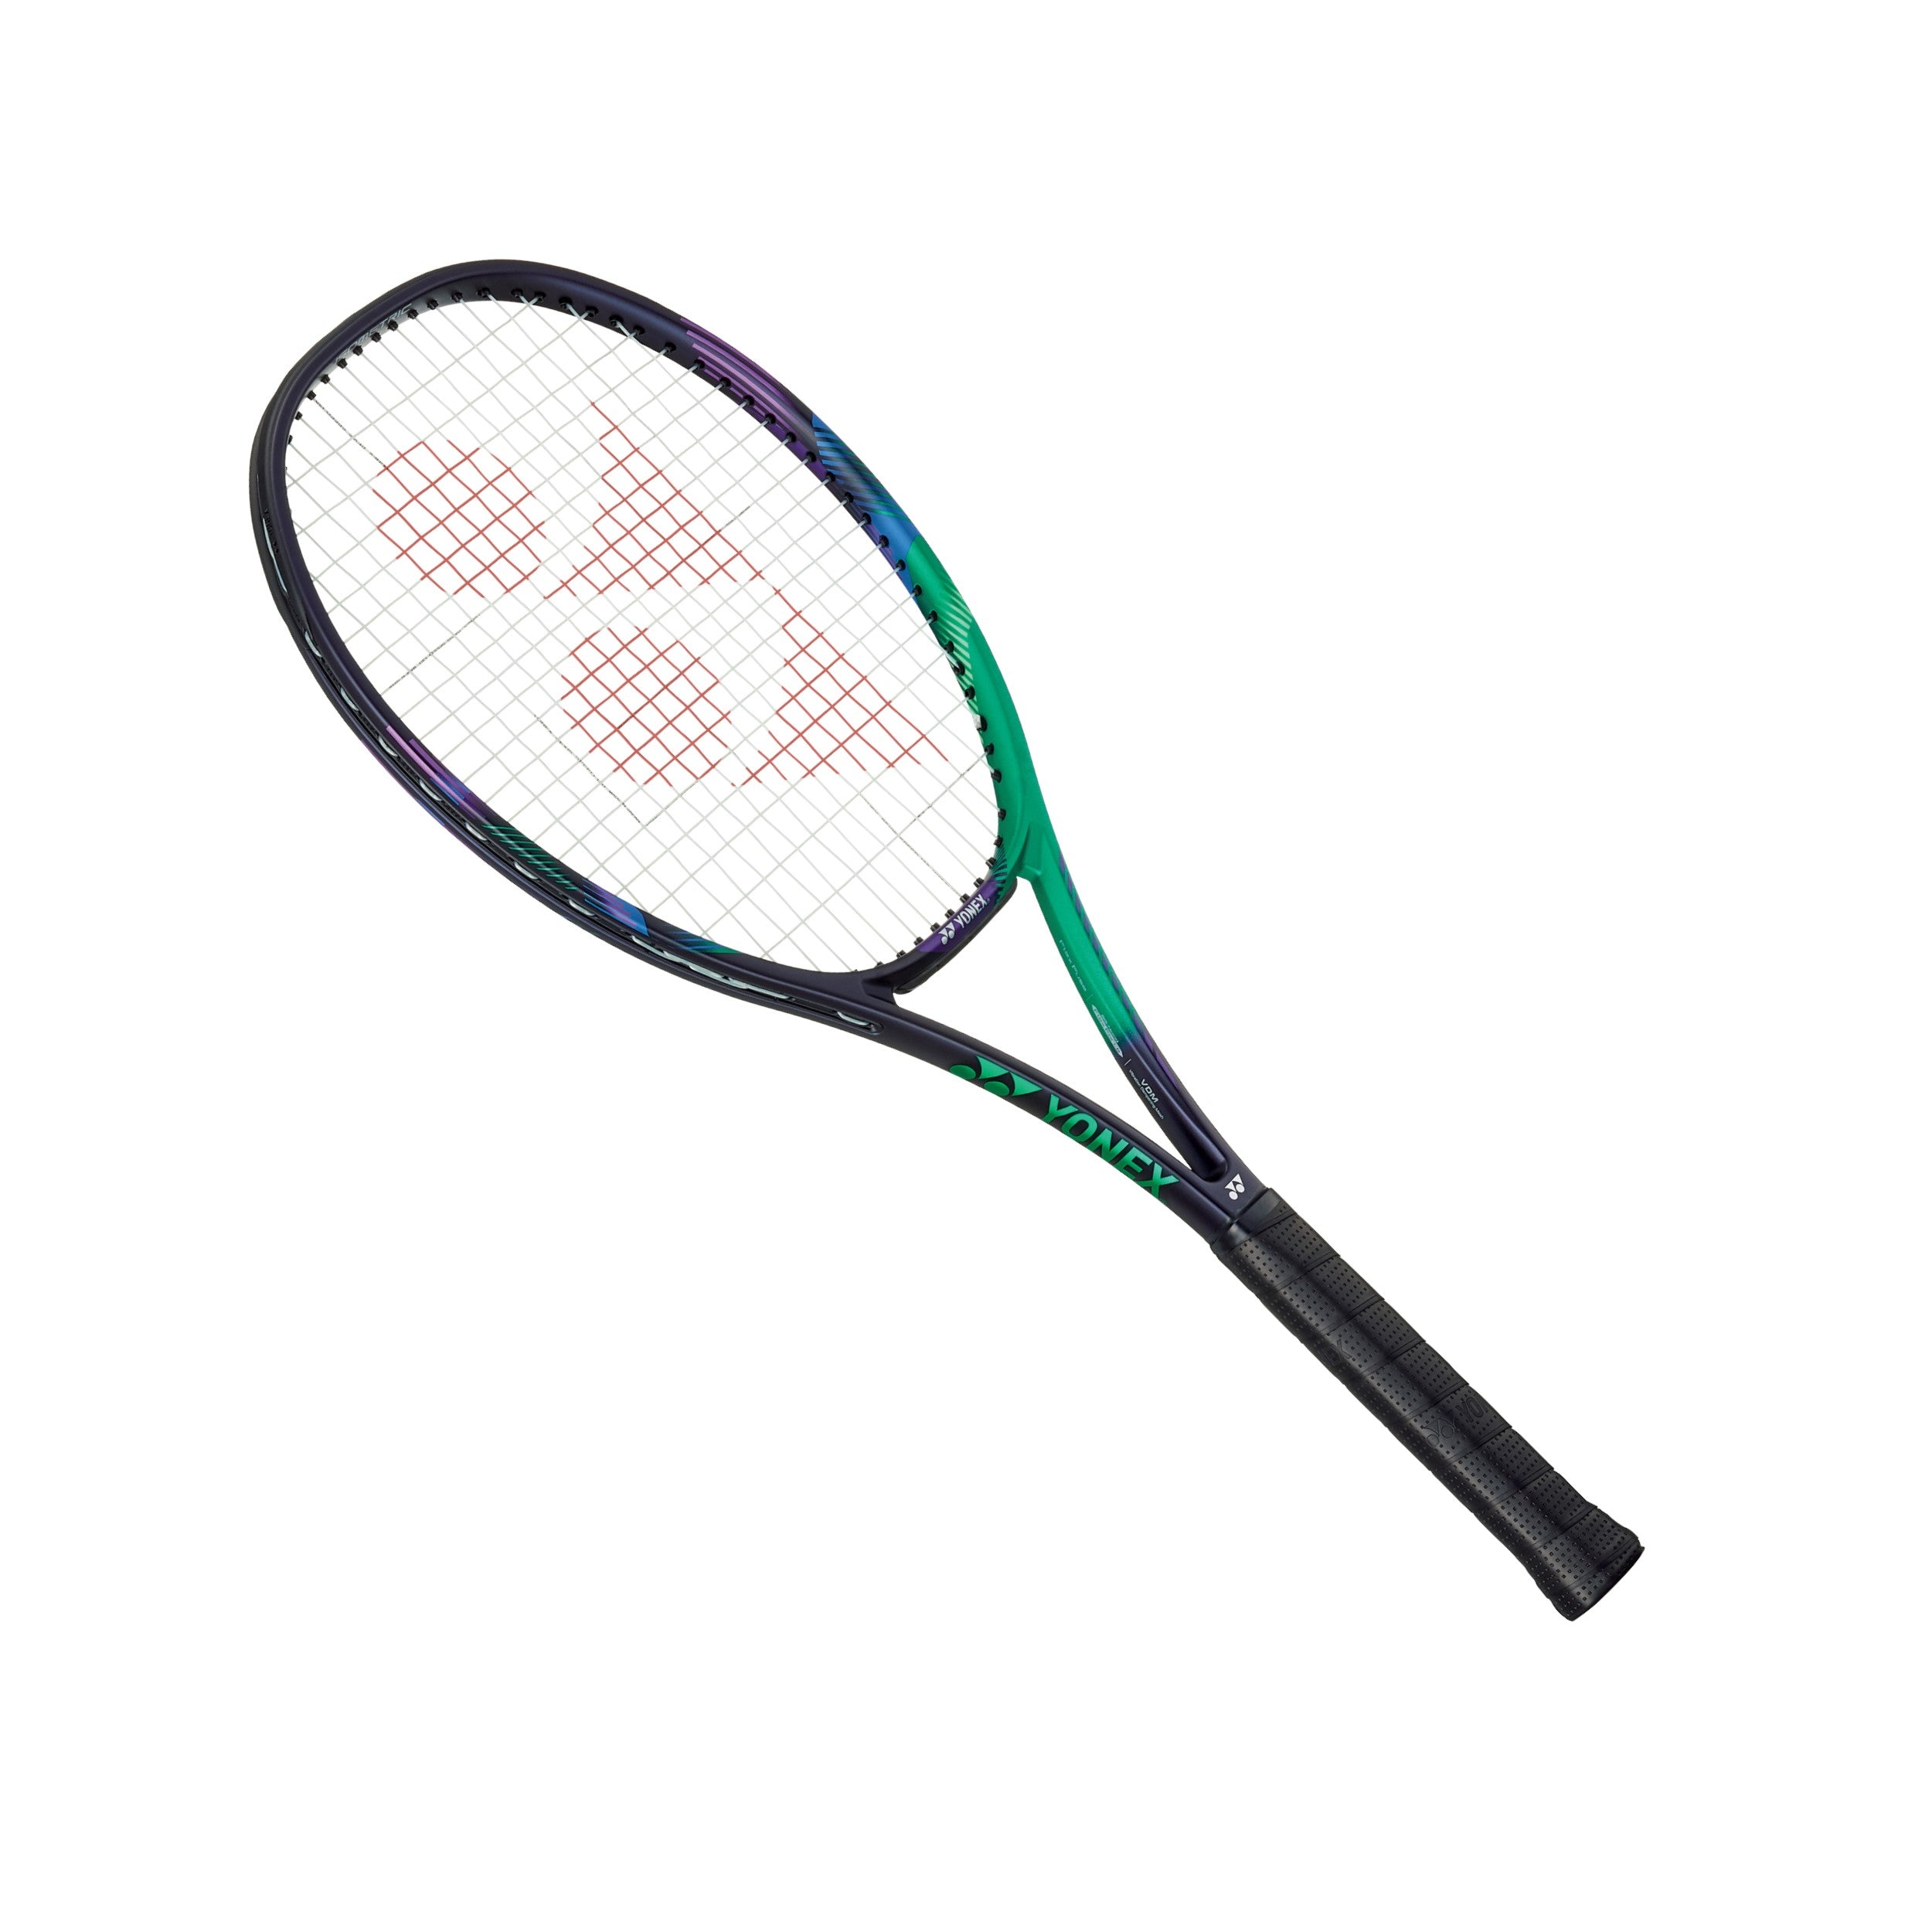 Yonex Vcore Pro Game (100 Sq.In, 270g) Lawn Tennis Racket